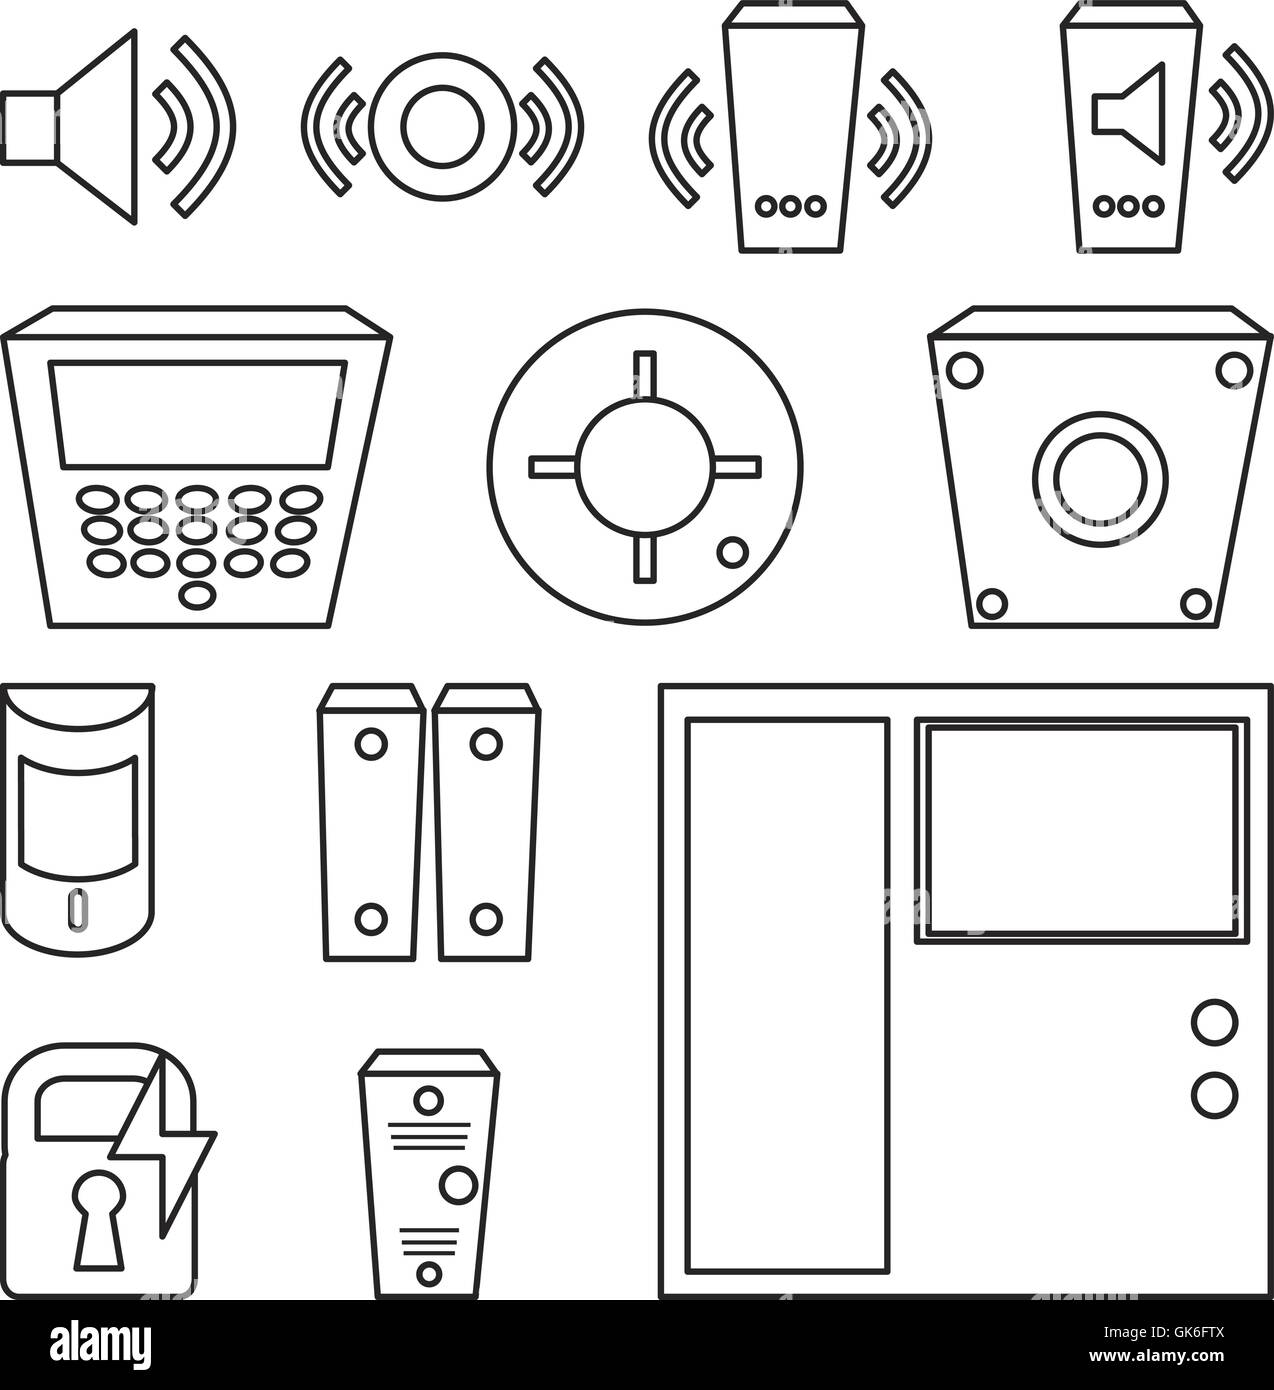 Vector simple jeu d'icônes pour les détecteurs d'incendie, de la fenêtre,  son, interphone, alarme incendie, reader, serrure électronique. Syst de  contrôle d'accès Image Vectorielle Stock - Alamy